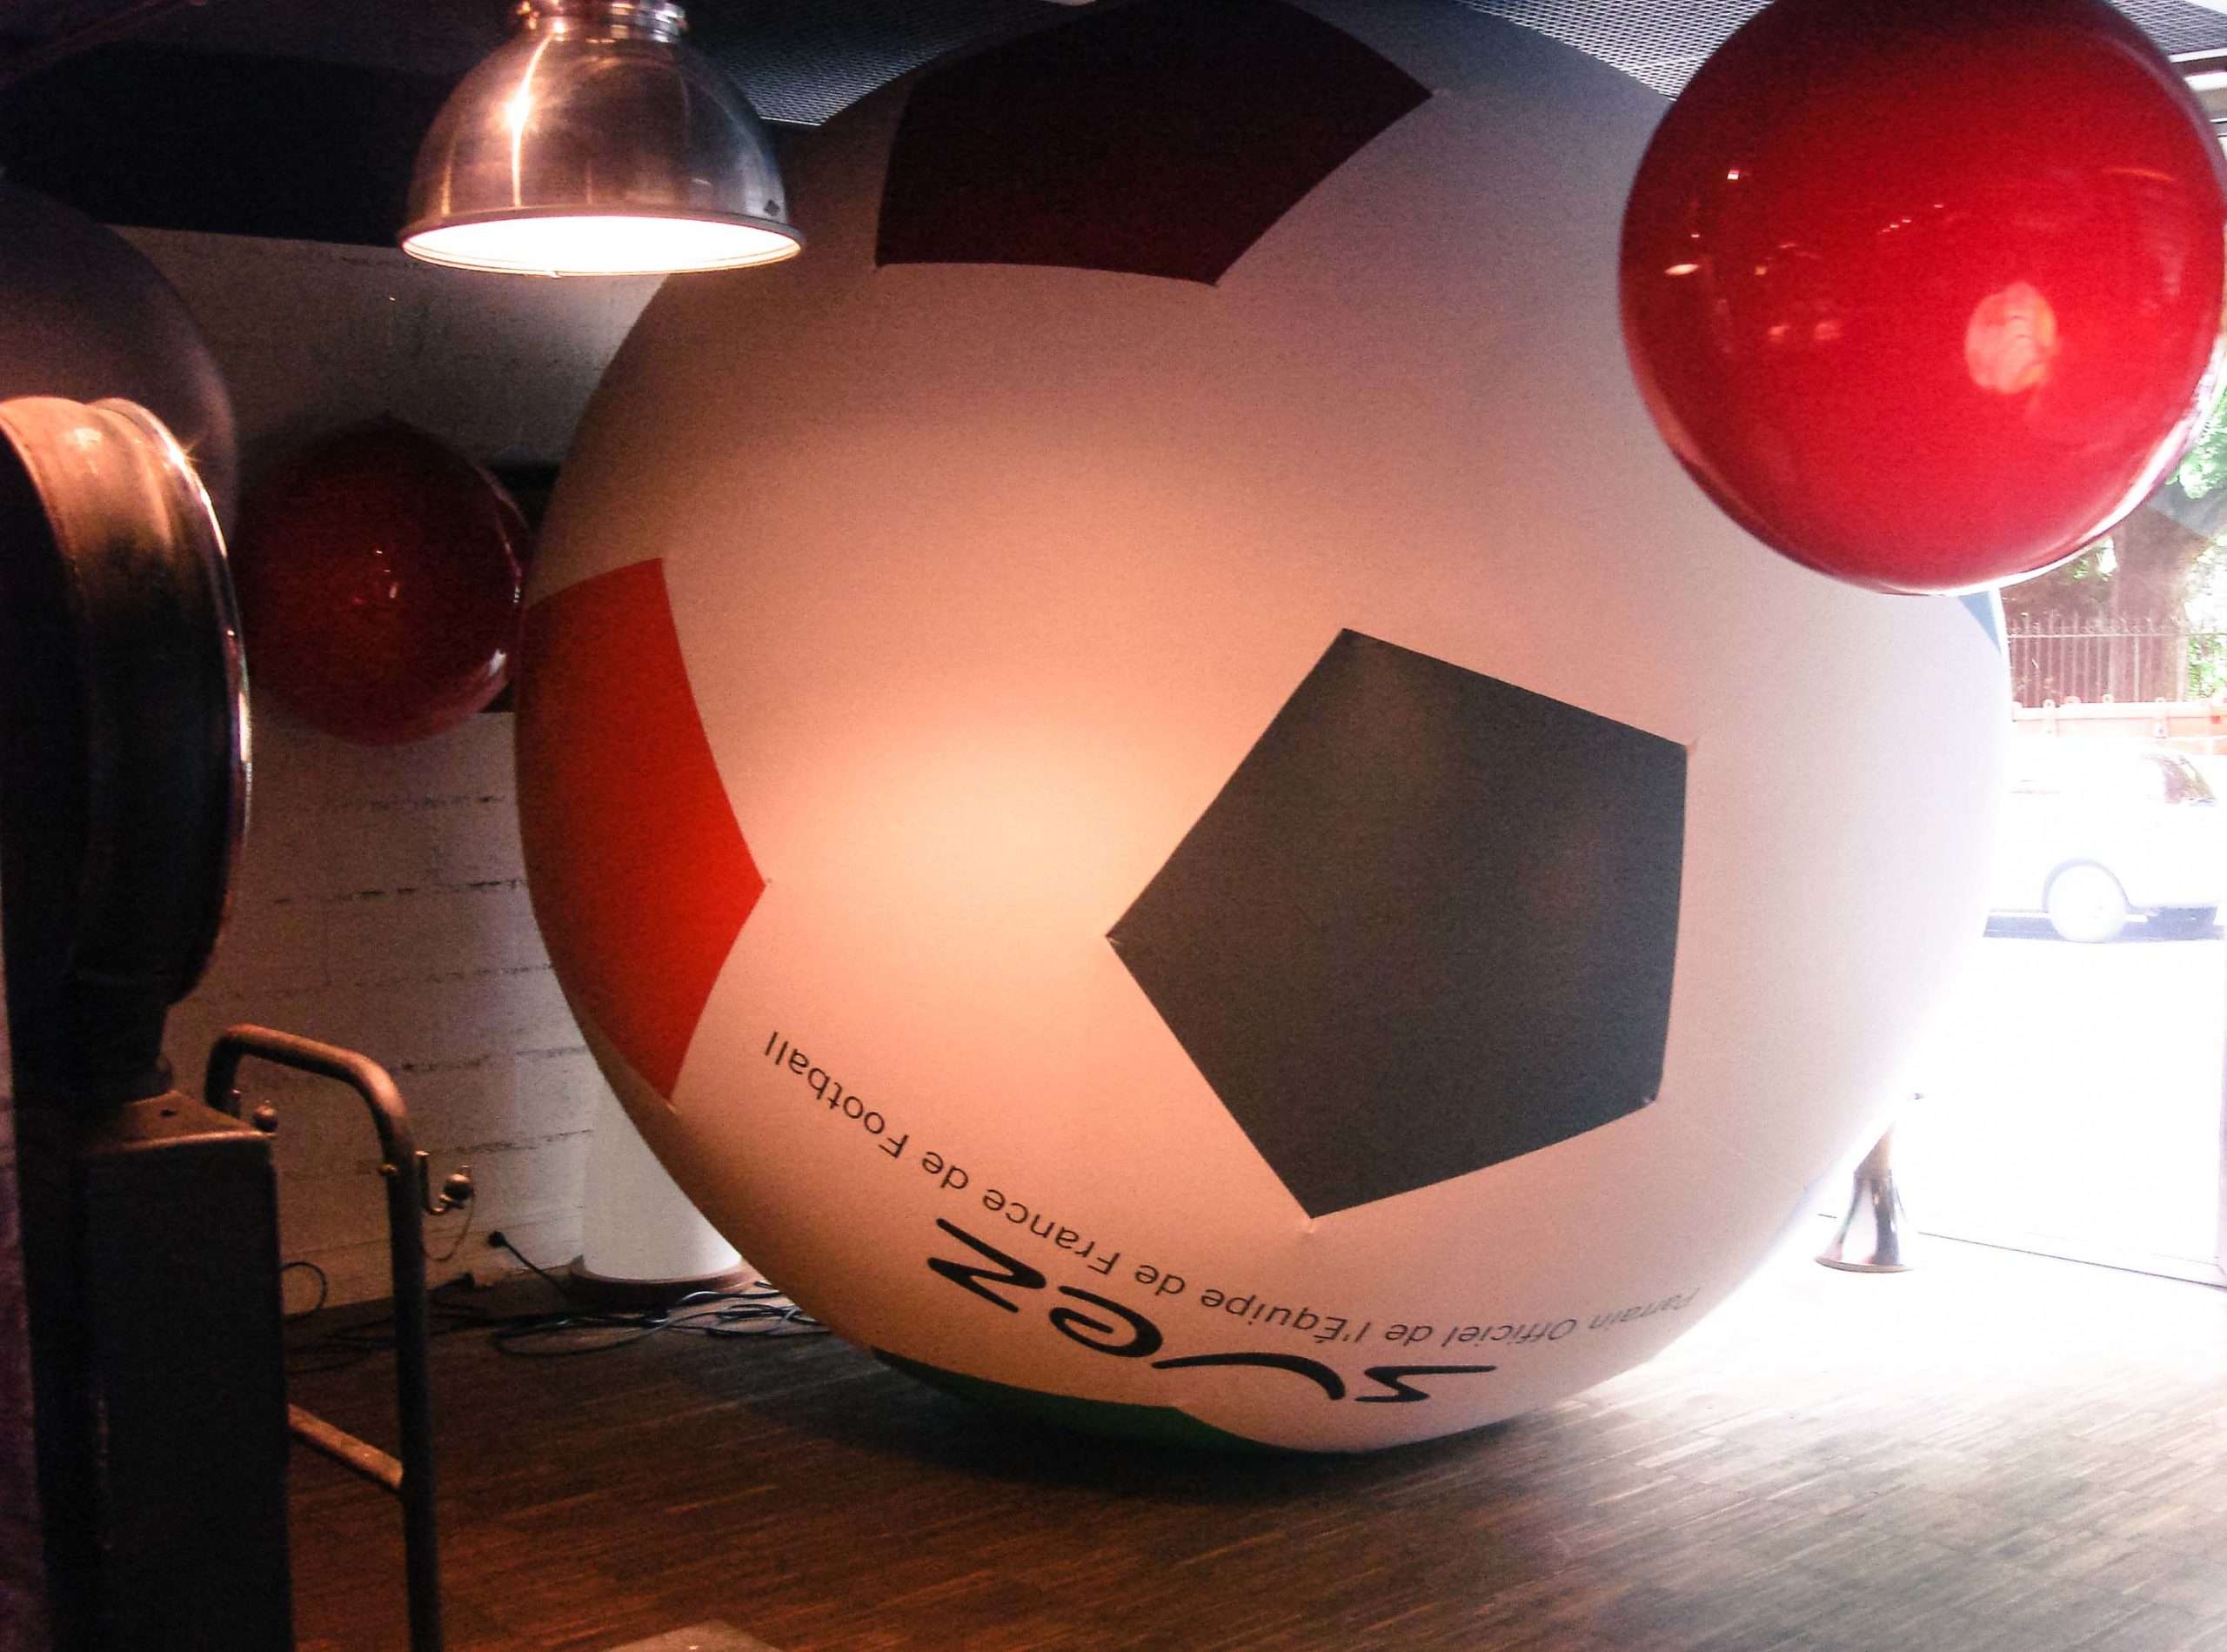 Ballon hélium géant – Stade de France - JC Keller - Designer gonflable